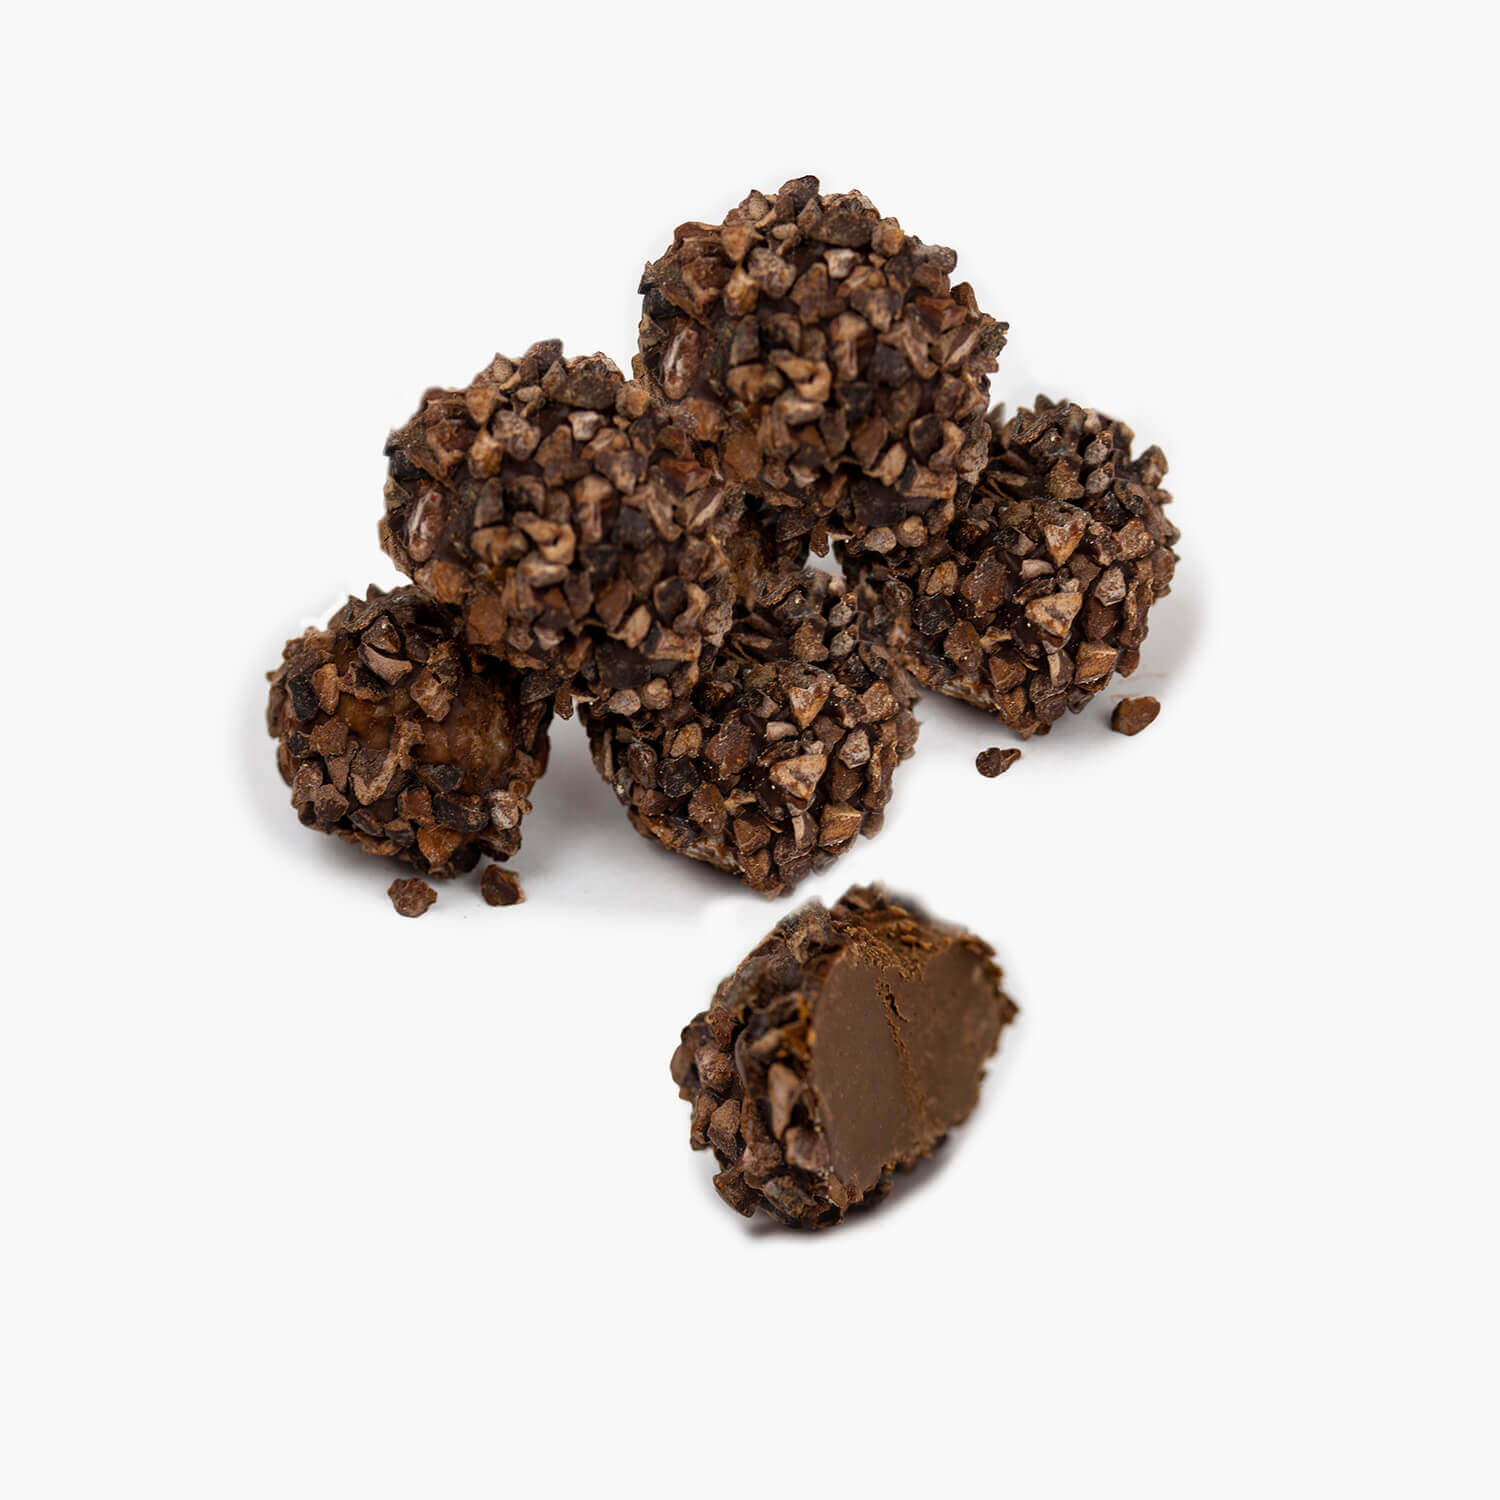 truffes de cacao douces-amères